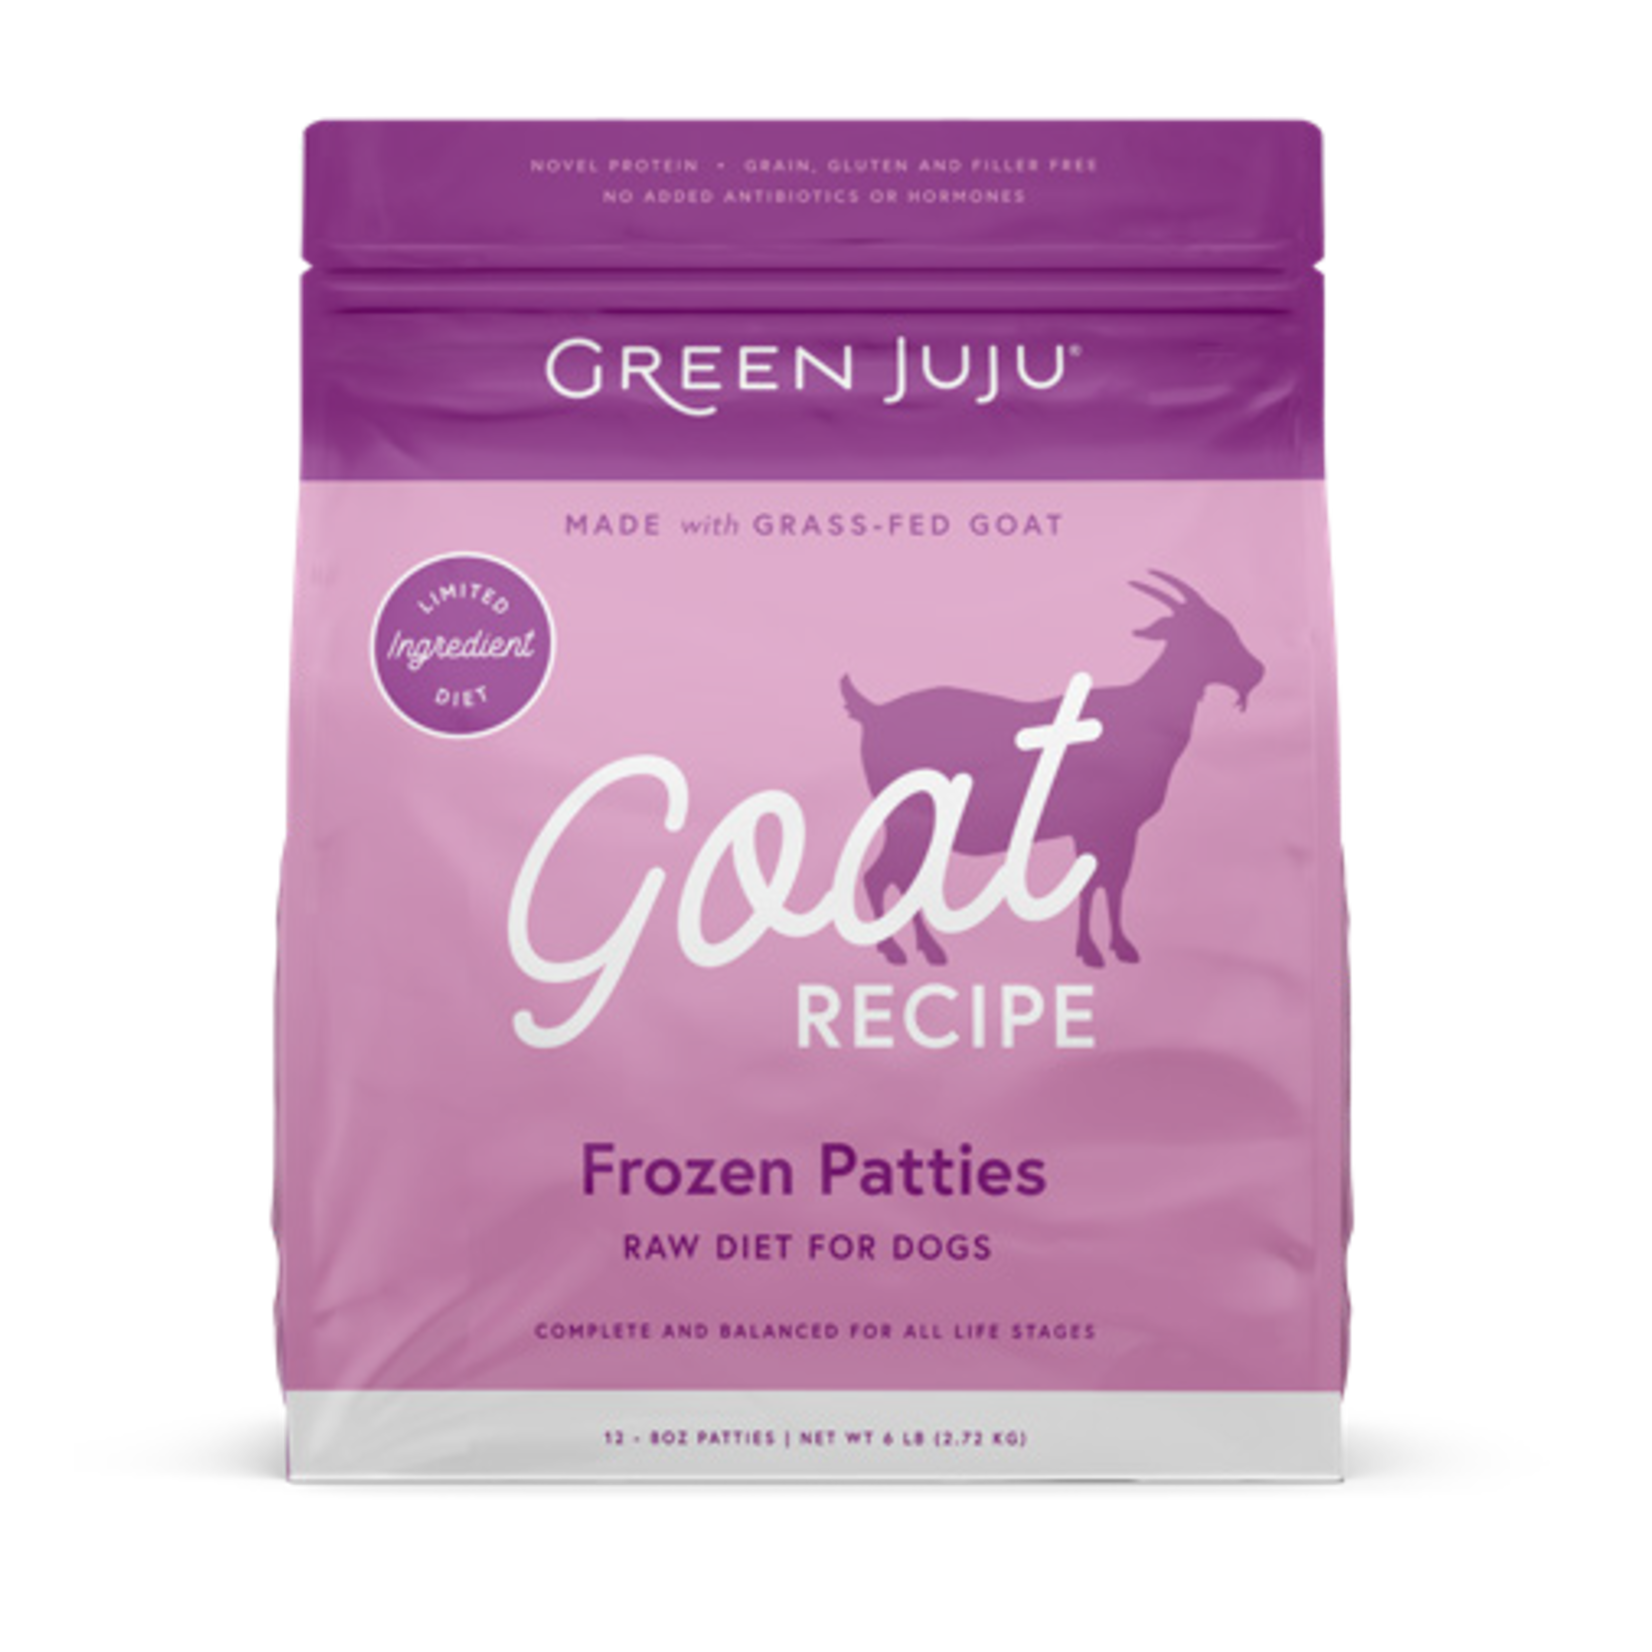 Green Juju Green Juju Frozen Patties - Goat Recipe Raw Diet